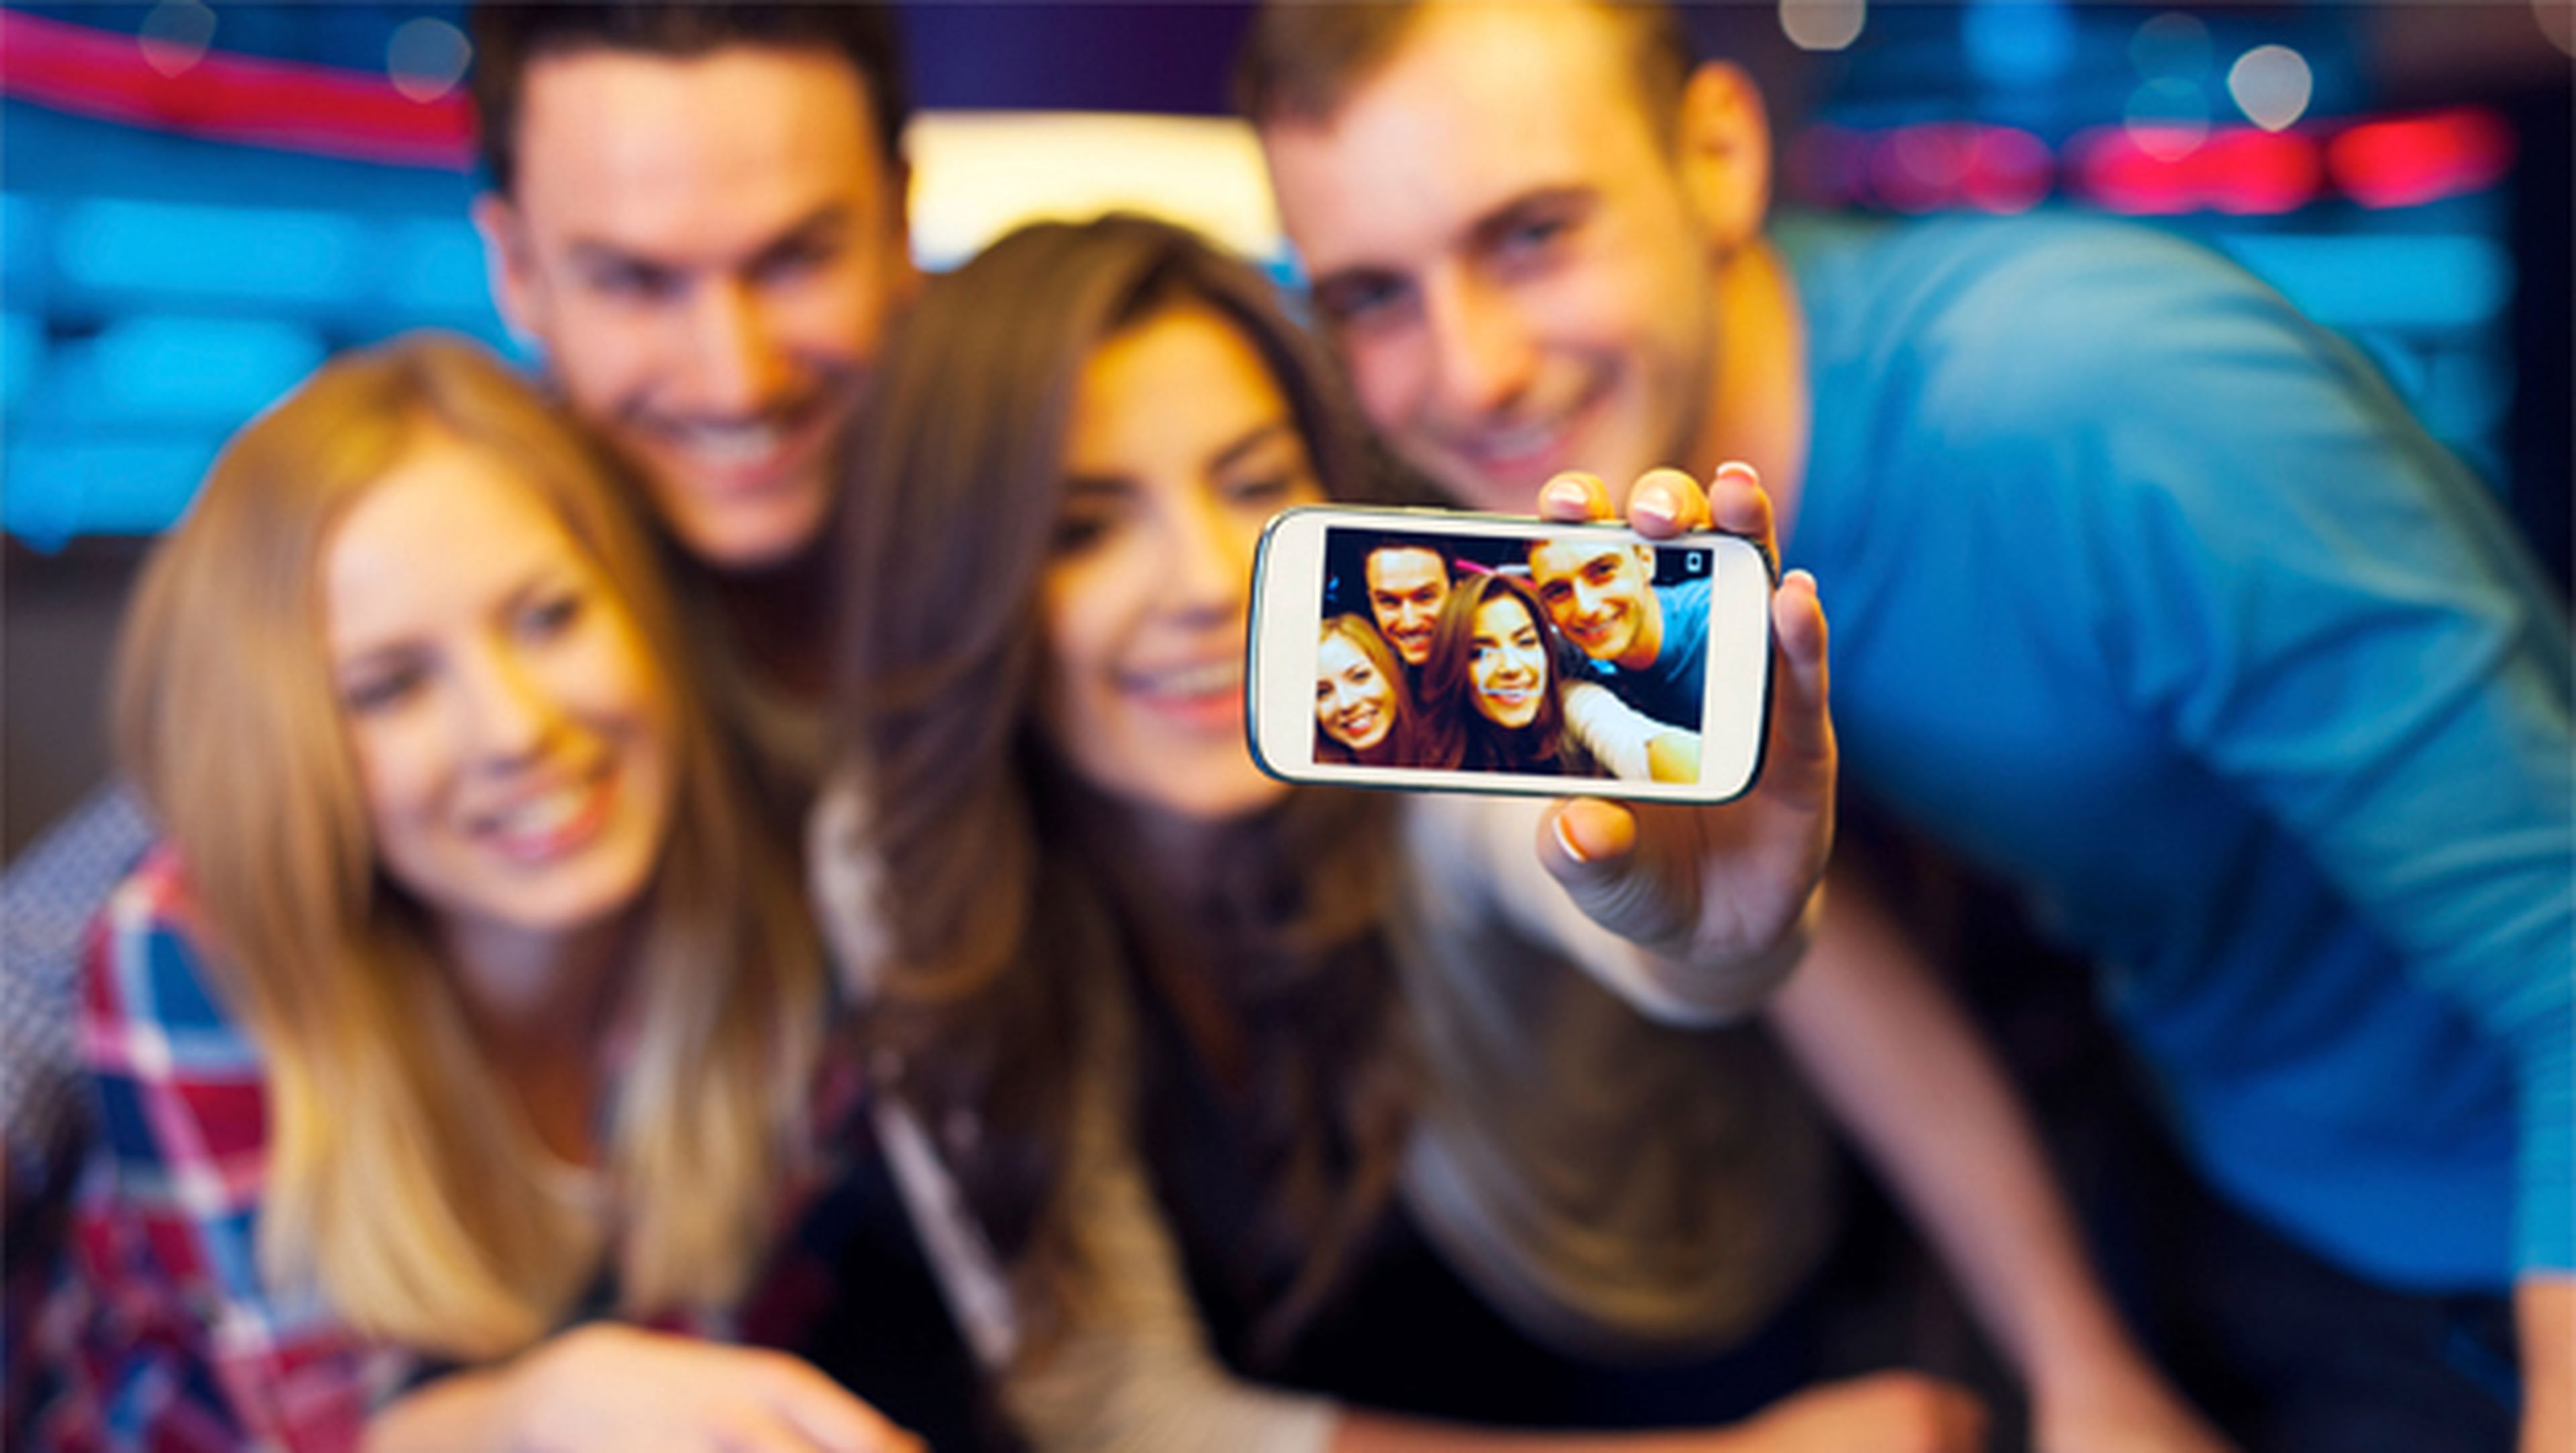 Lanzan una app que 'da la vuelta' al concepto de 'Selfie'